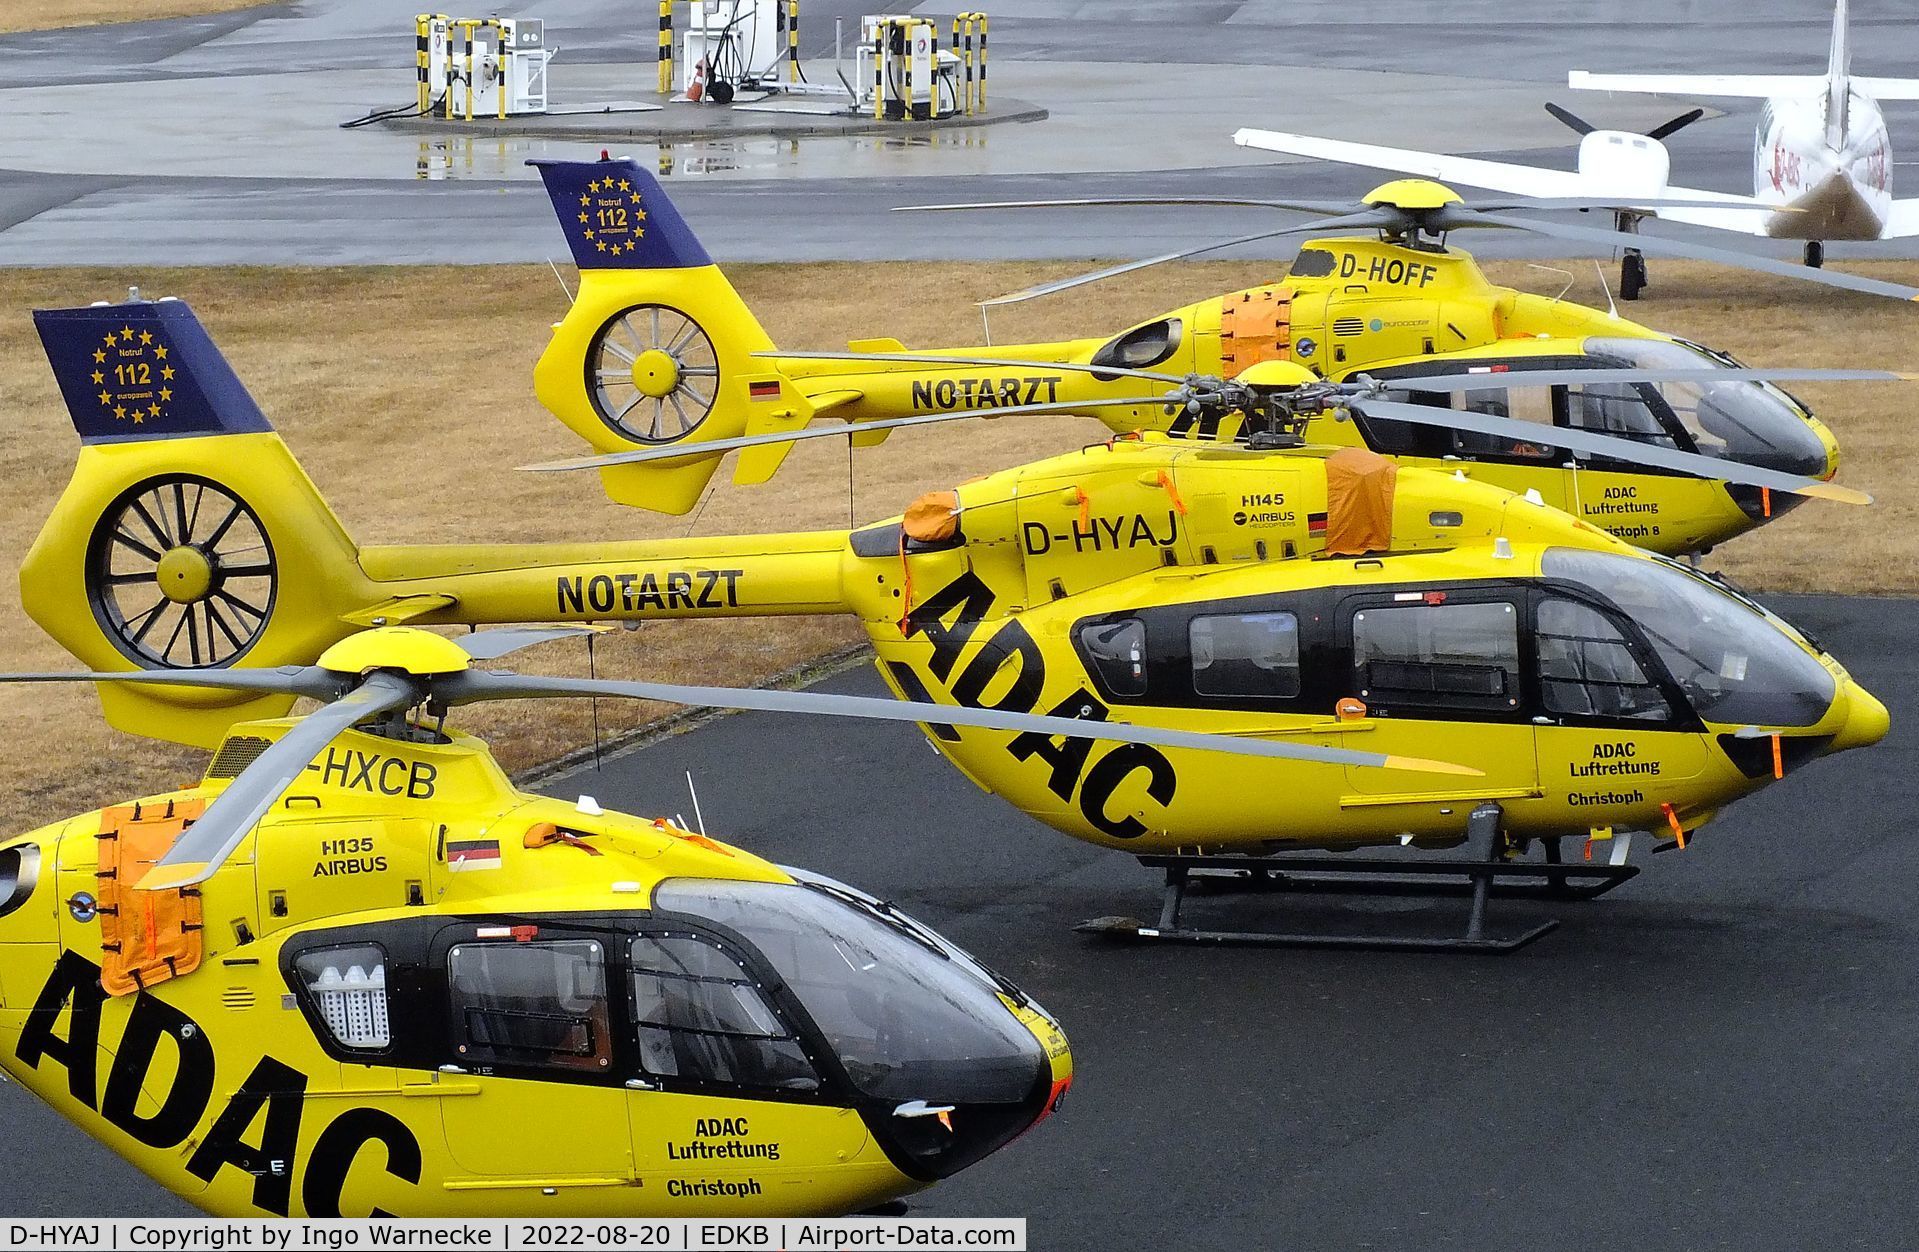 D-HYAJ, 2016 Airbus Helicopters H-145M (BK-117D-2) C/N 20103, Airbus Helicopters H145M EMS-helicopter of ADAC Luftrettung at Bonn-Hangelar airfield during the Grumman Fly-in 2022